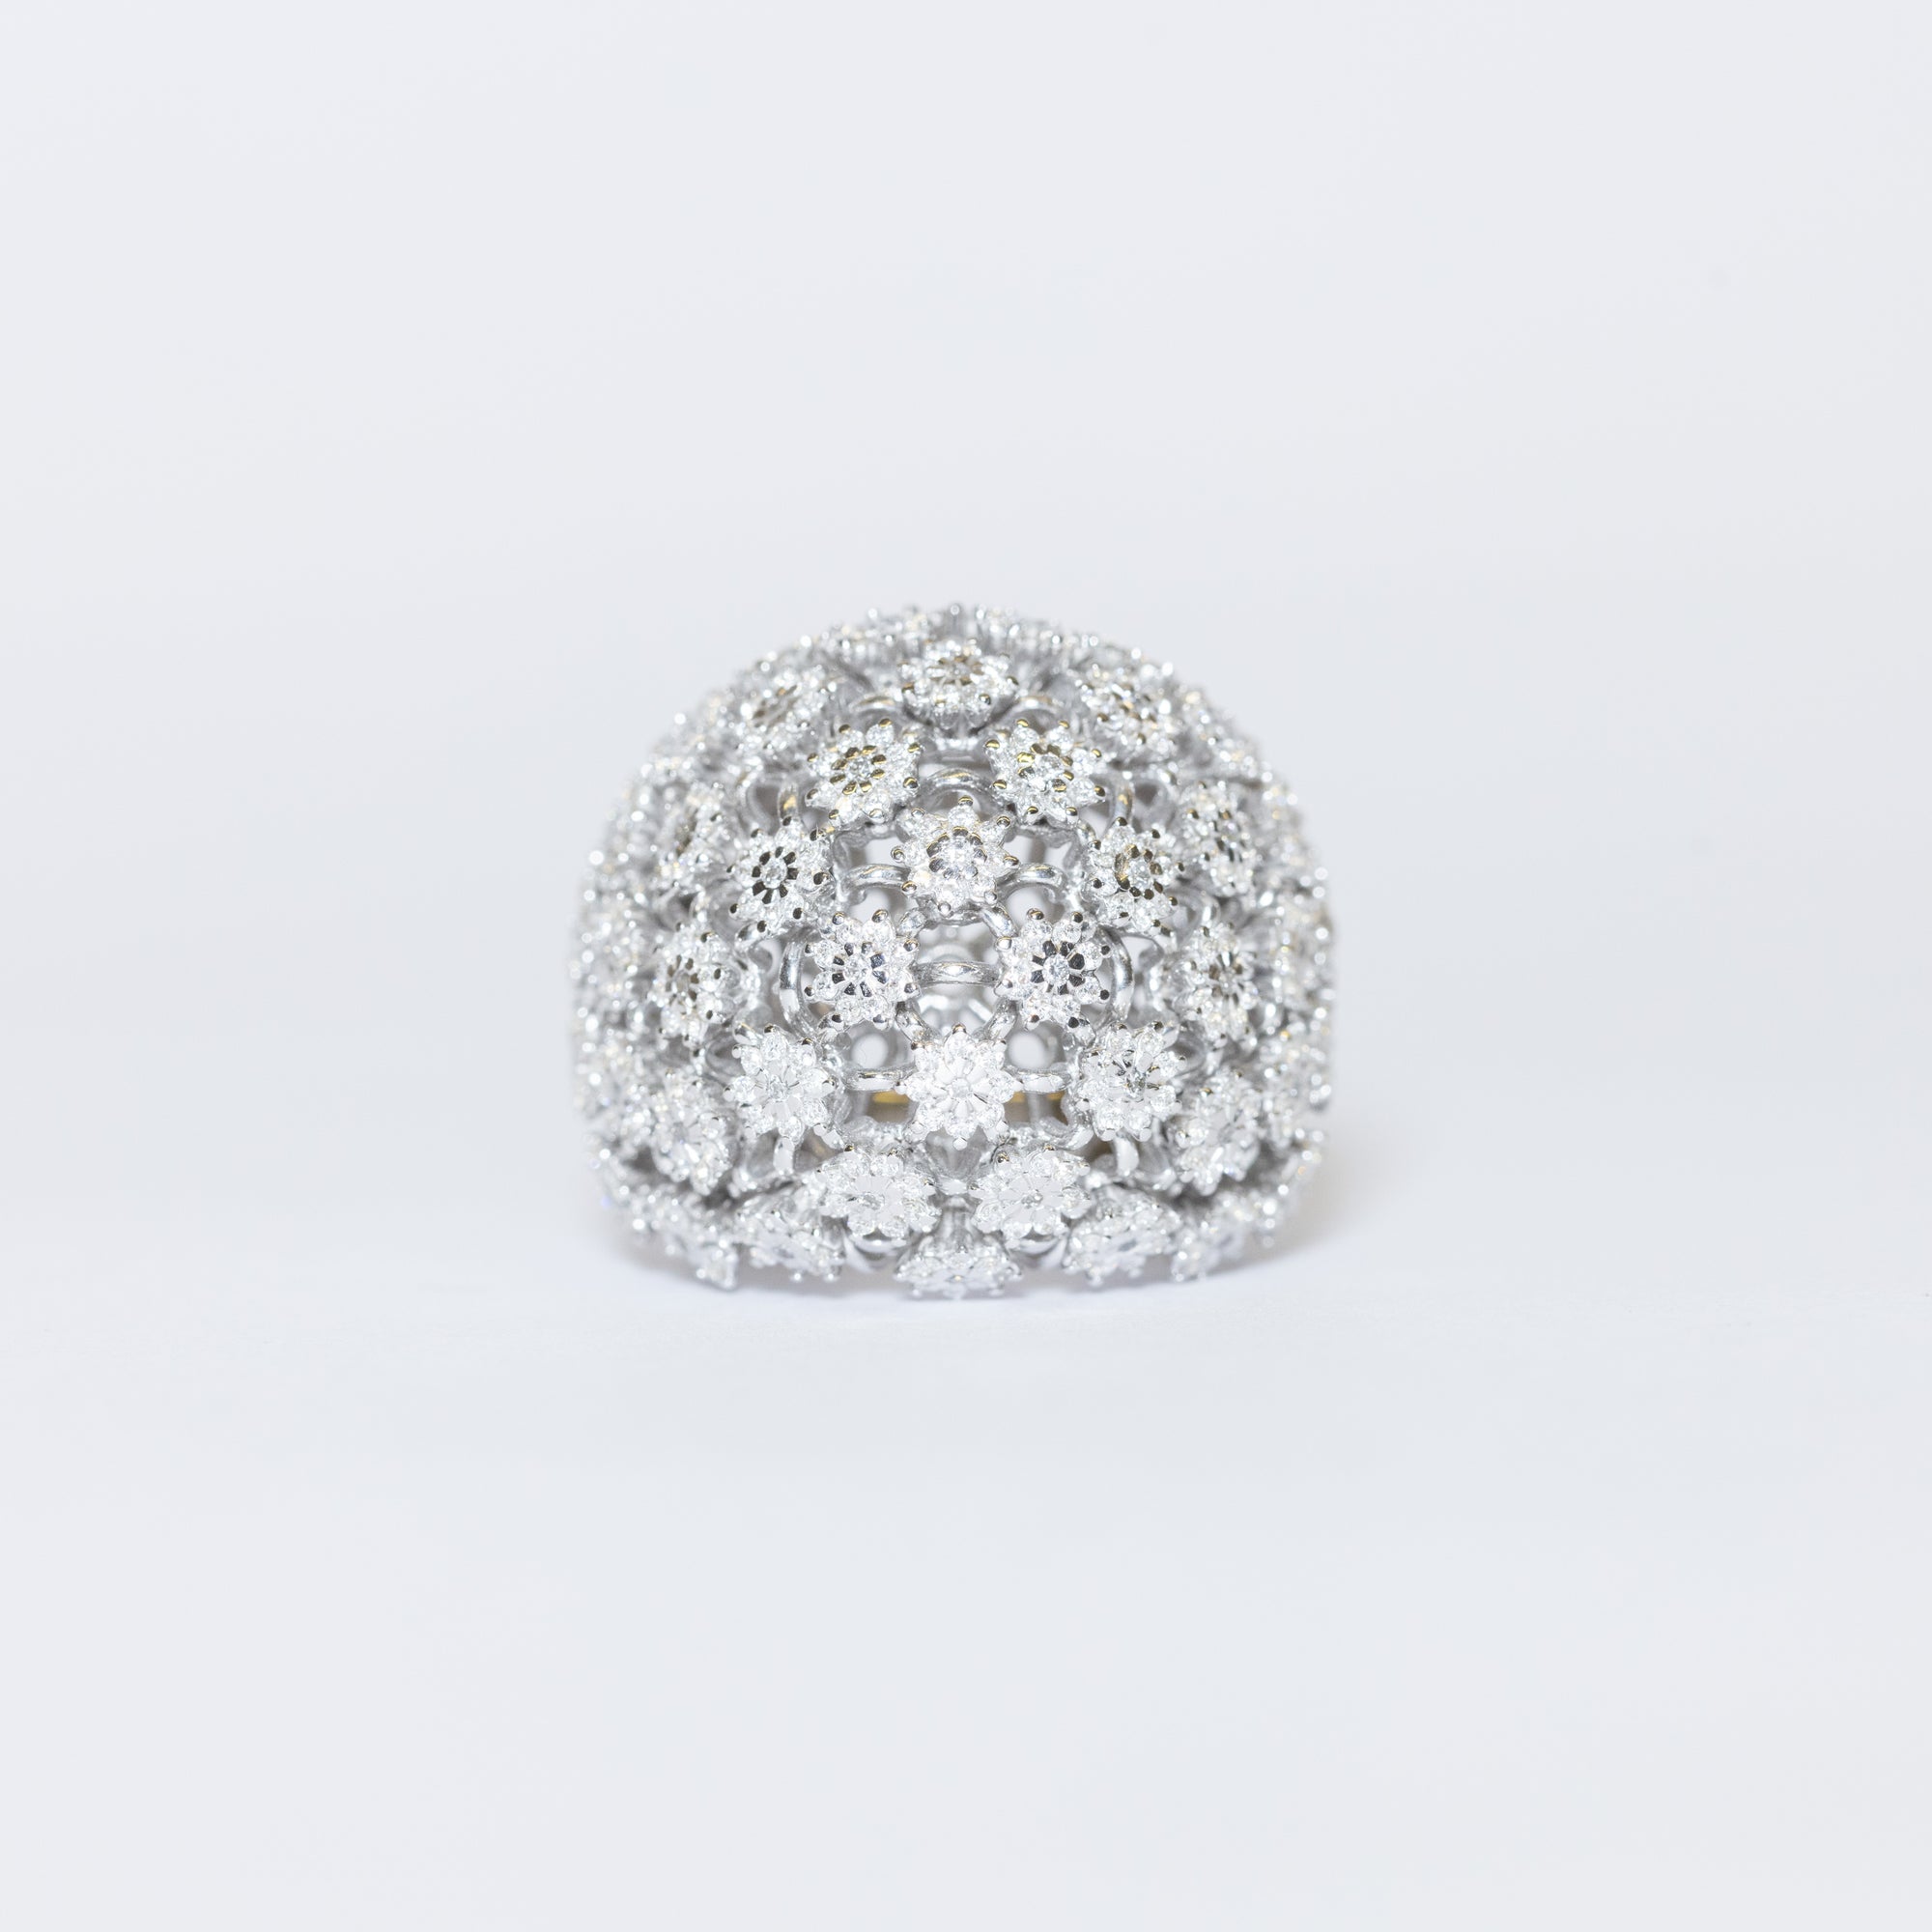 Anello Fascione Bombato in Oro Bianco 18 kt con Trame a Forma di Margherite in Diamanti Taglio Brillante